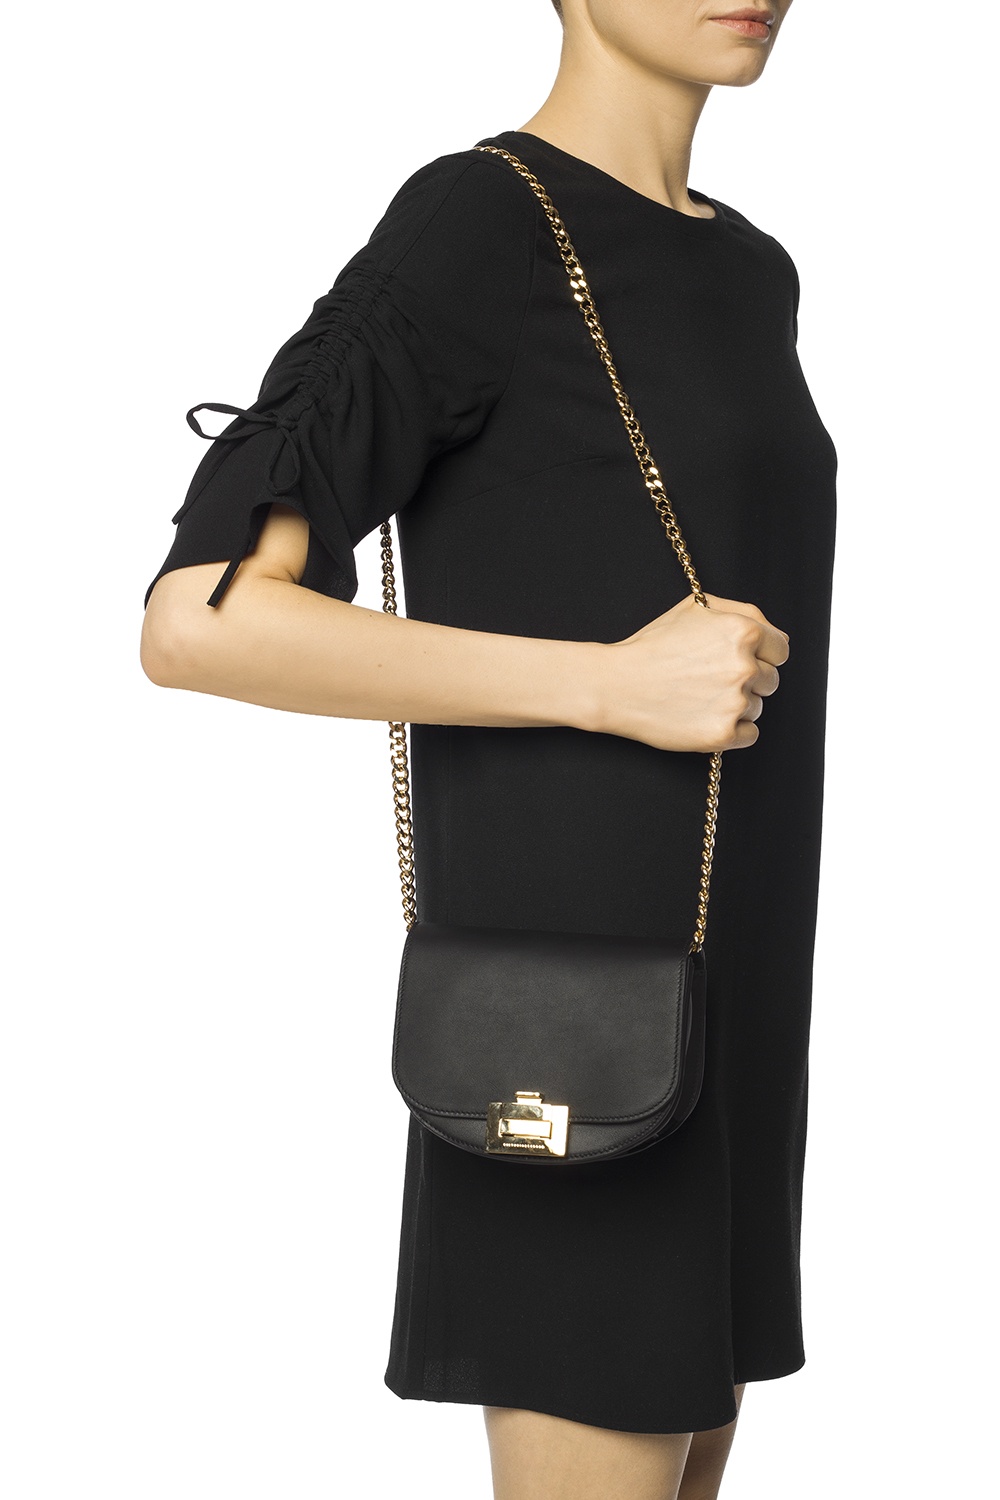 Victoria Beckham 'Half Moon' shoulder Horsy bag